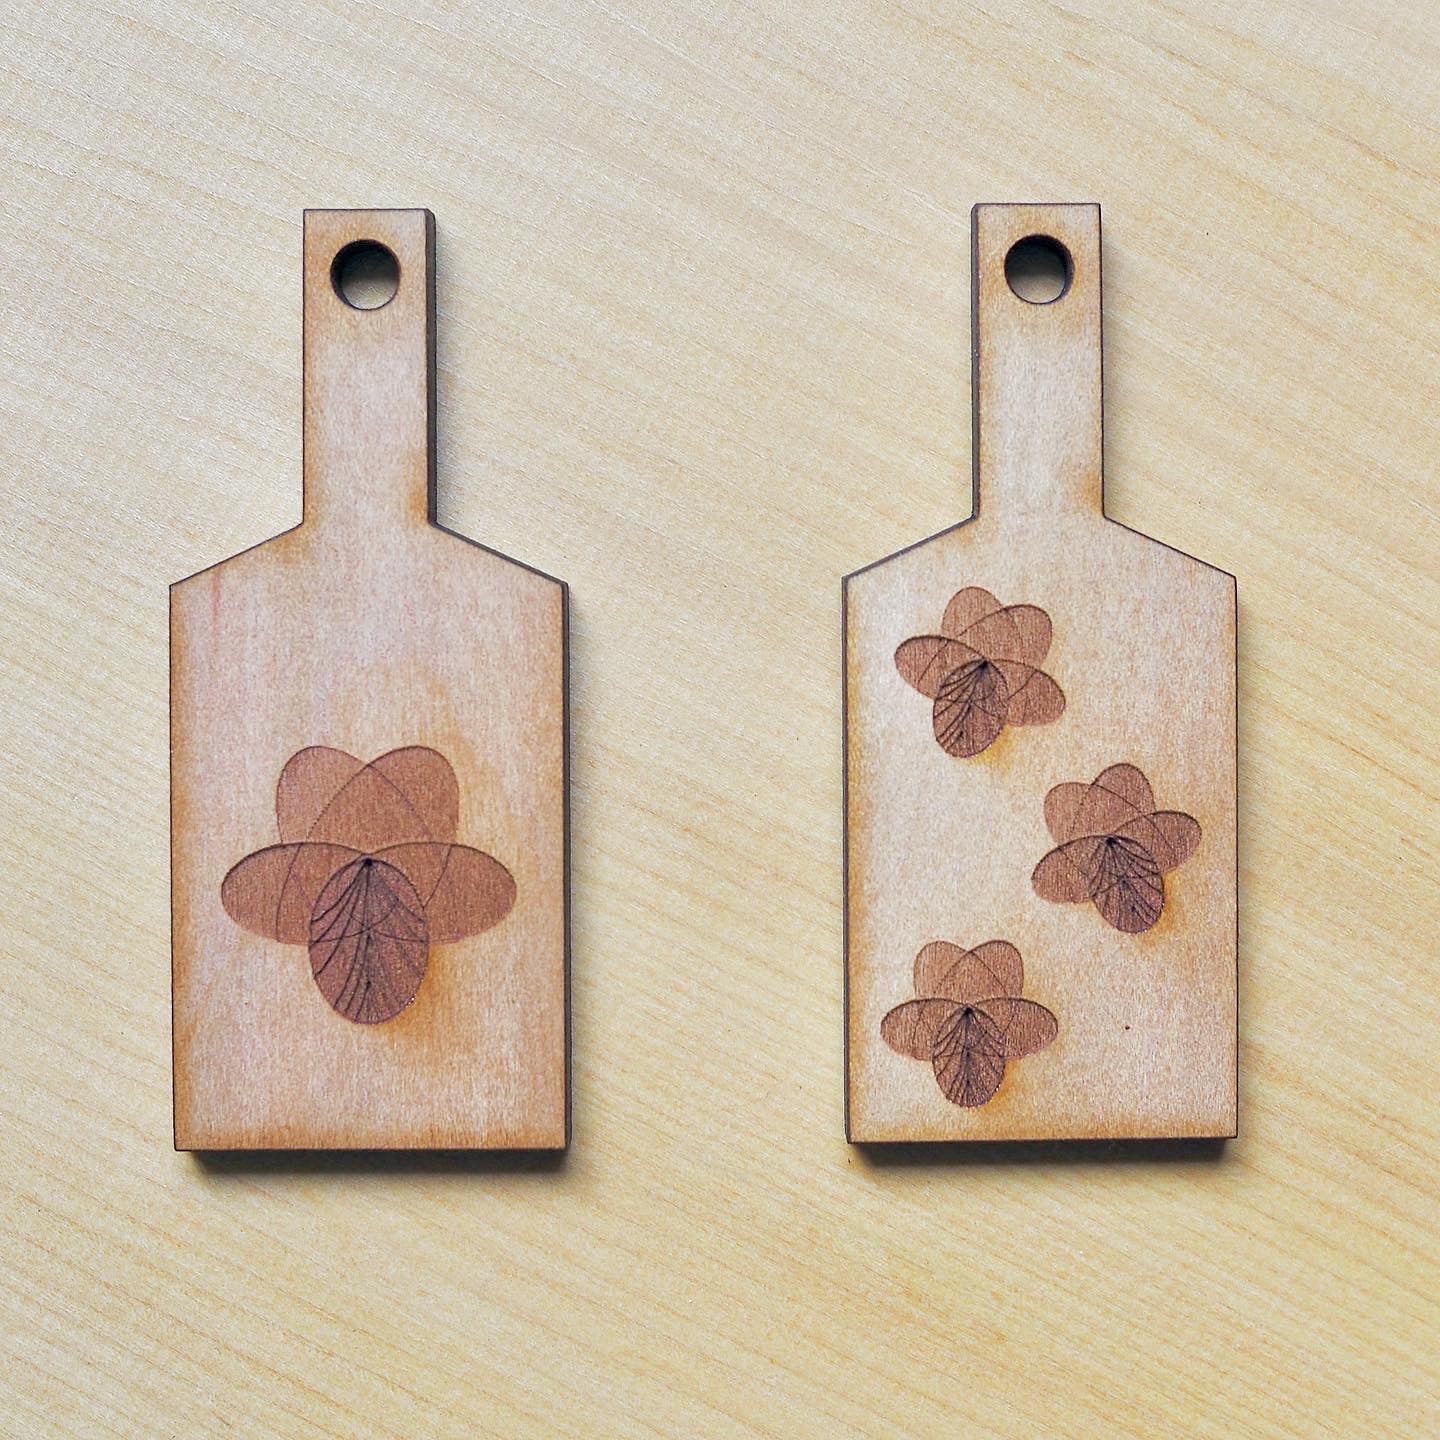 Wooden key holder 04.2 [Sumire]